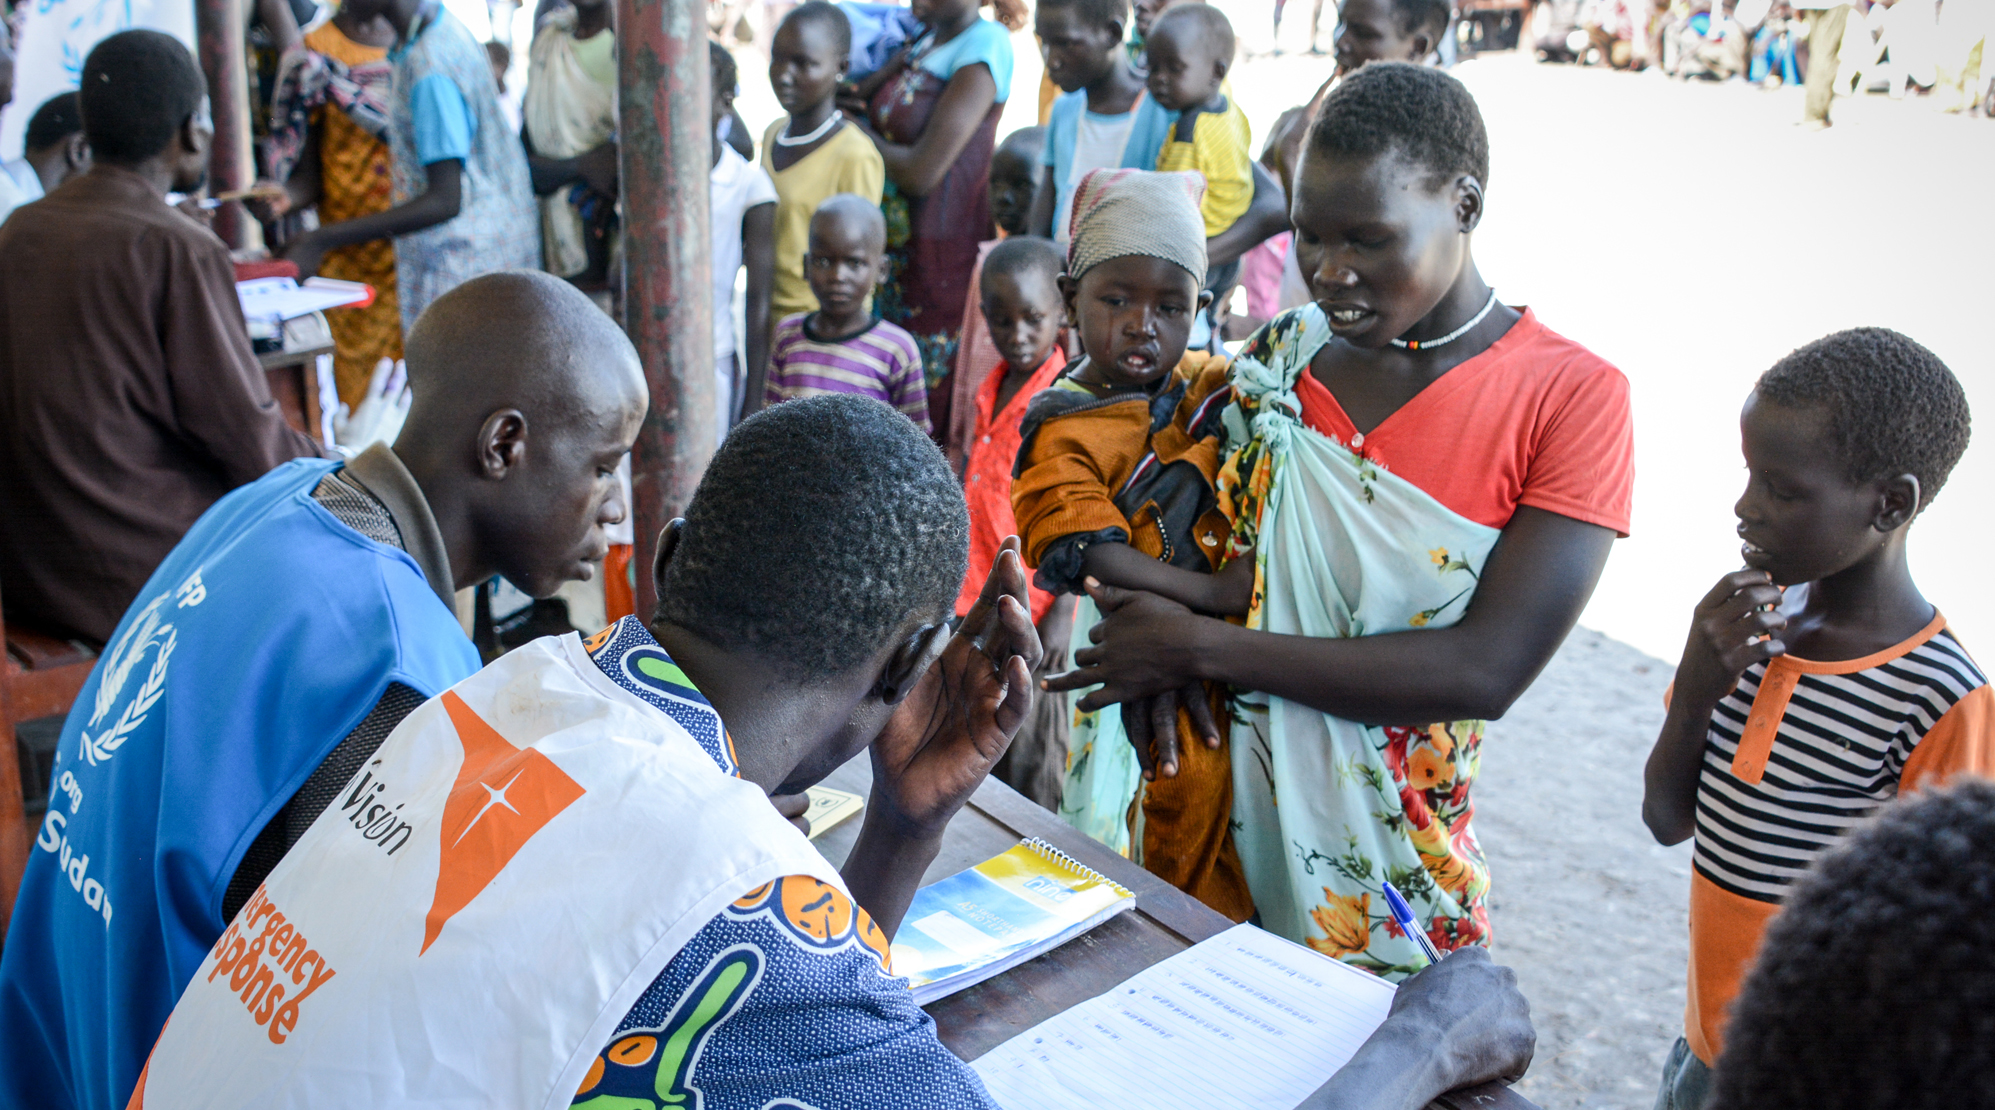 Gemeinsam mit dem UN-Welternährungsprogramm verteilt World Vision Nahrungsmittel an hilfsbedürftige Flüchtlinge im Südsudan.